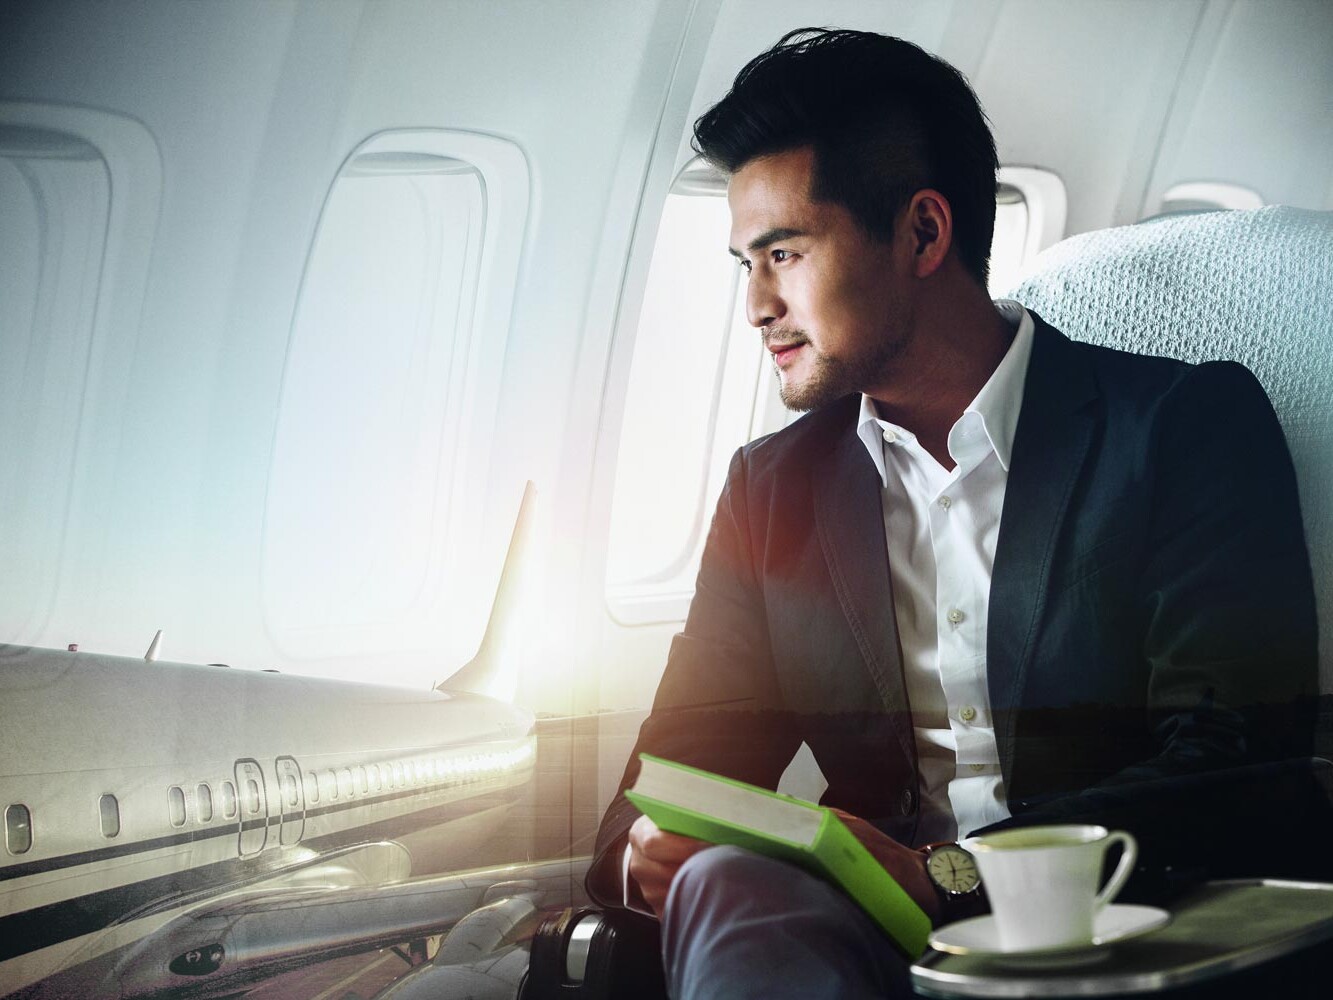 Billede af mand med ørepropper i ørerne i fly med grøn bog og en kaffekop.